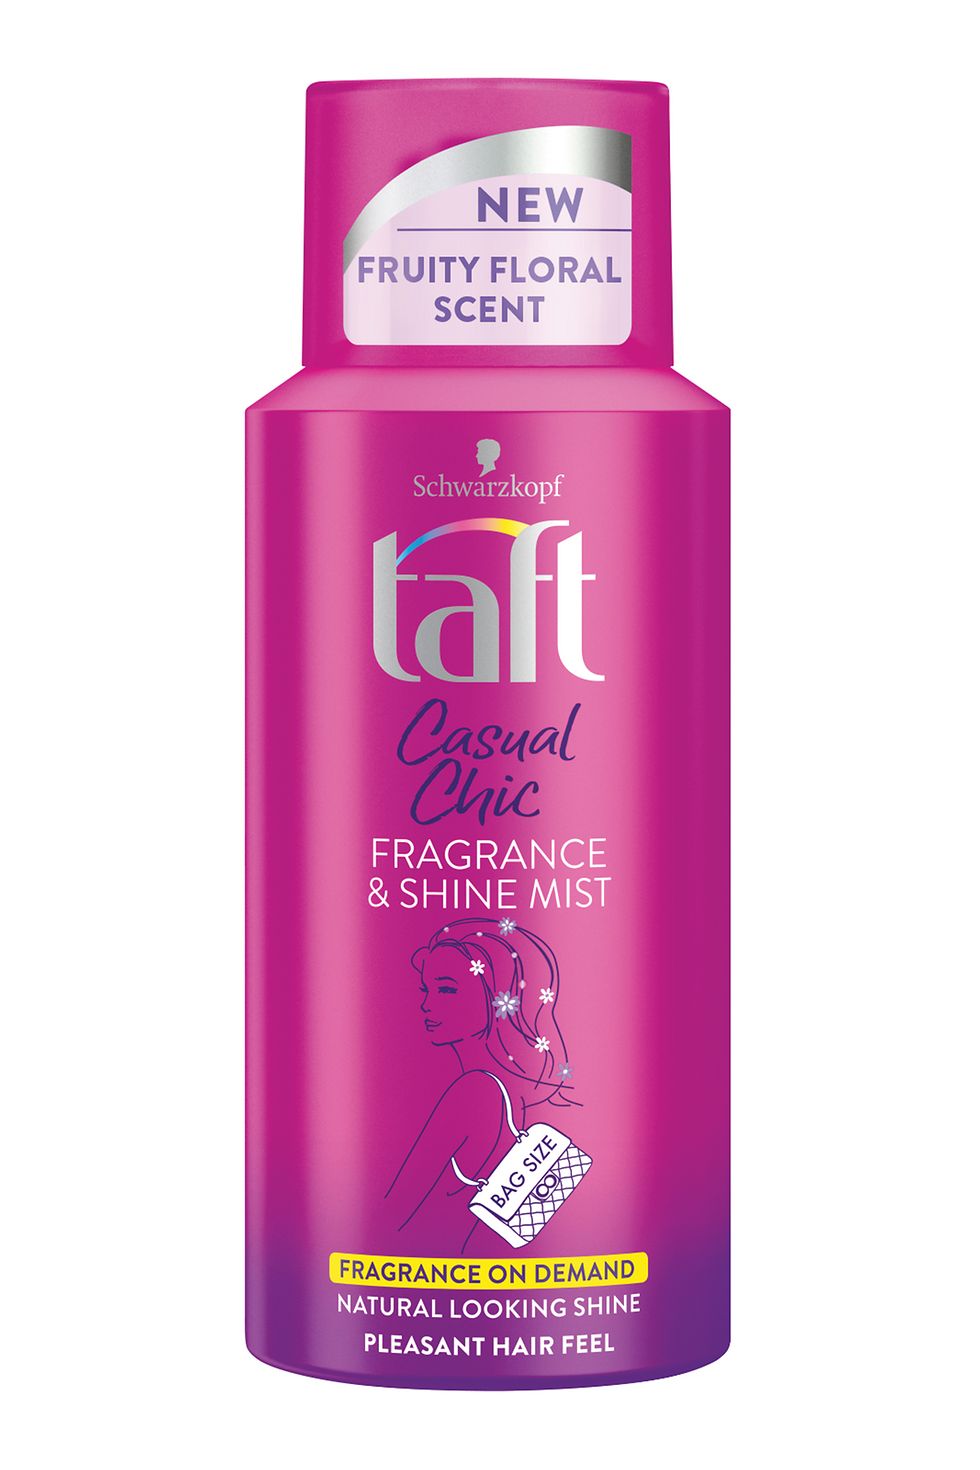 Taft CASUAL CHIC parfém a sprej na lesk